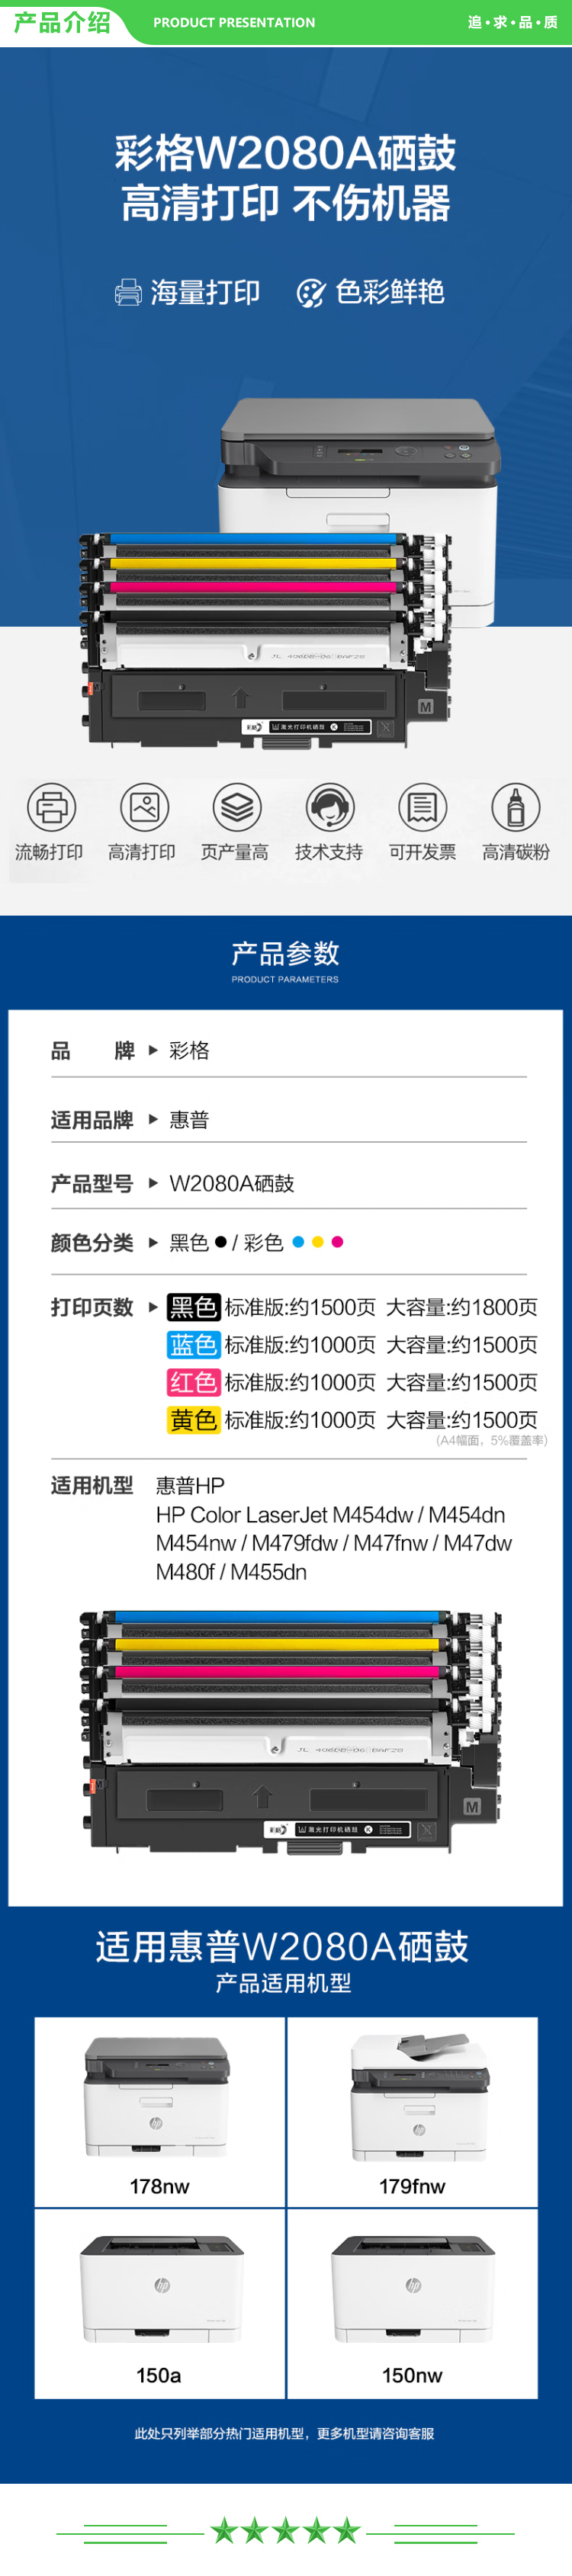 彩格 W2080A蓝色粉盒 共1000页 带芯片 适用惠普hp178nw 179fnw 150a 150w 118a 彩色激光打印机.jpg